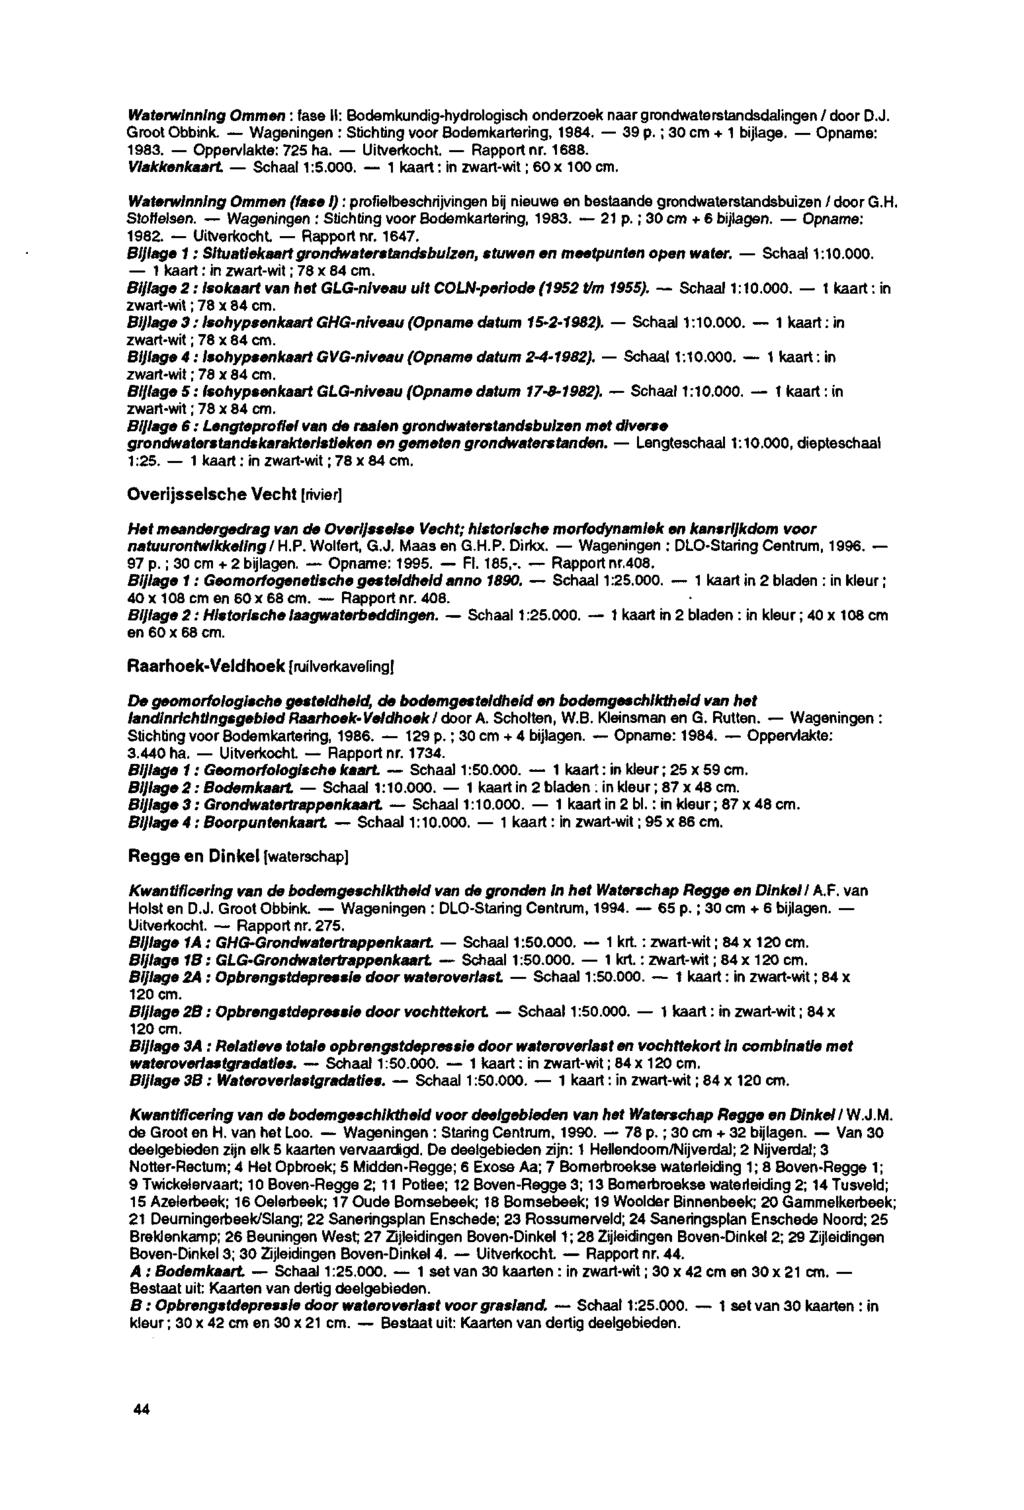 Waterwinning Ommen : fase II: Bodemkundig-hydrologisch onderzoek naar grondwaterstandsdalingen / door D.J. Groot Obbink. Wageningen : Stichting voor Bodemkartering, 1984. 39 p. ; 30 cm + 1 bijlage.